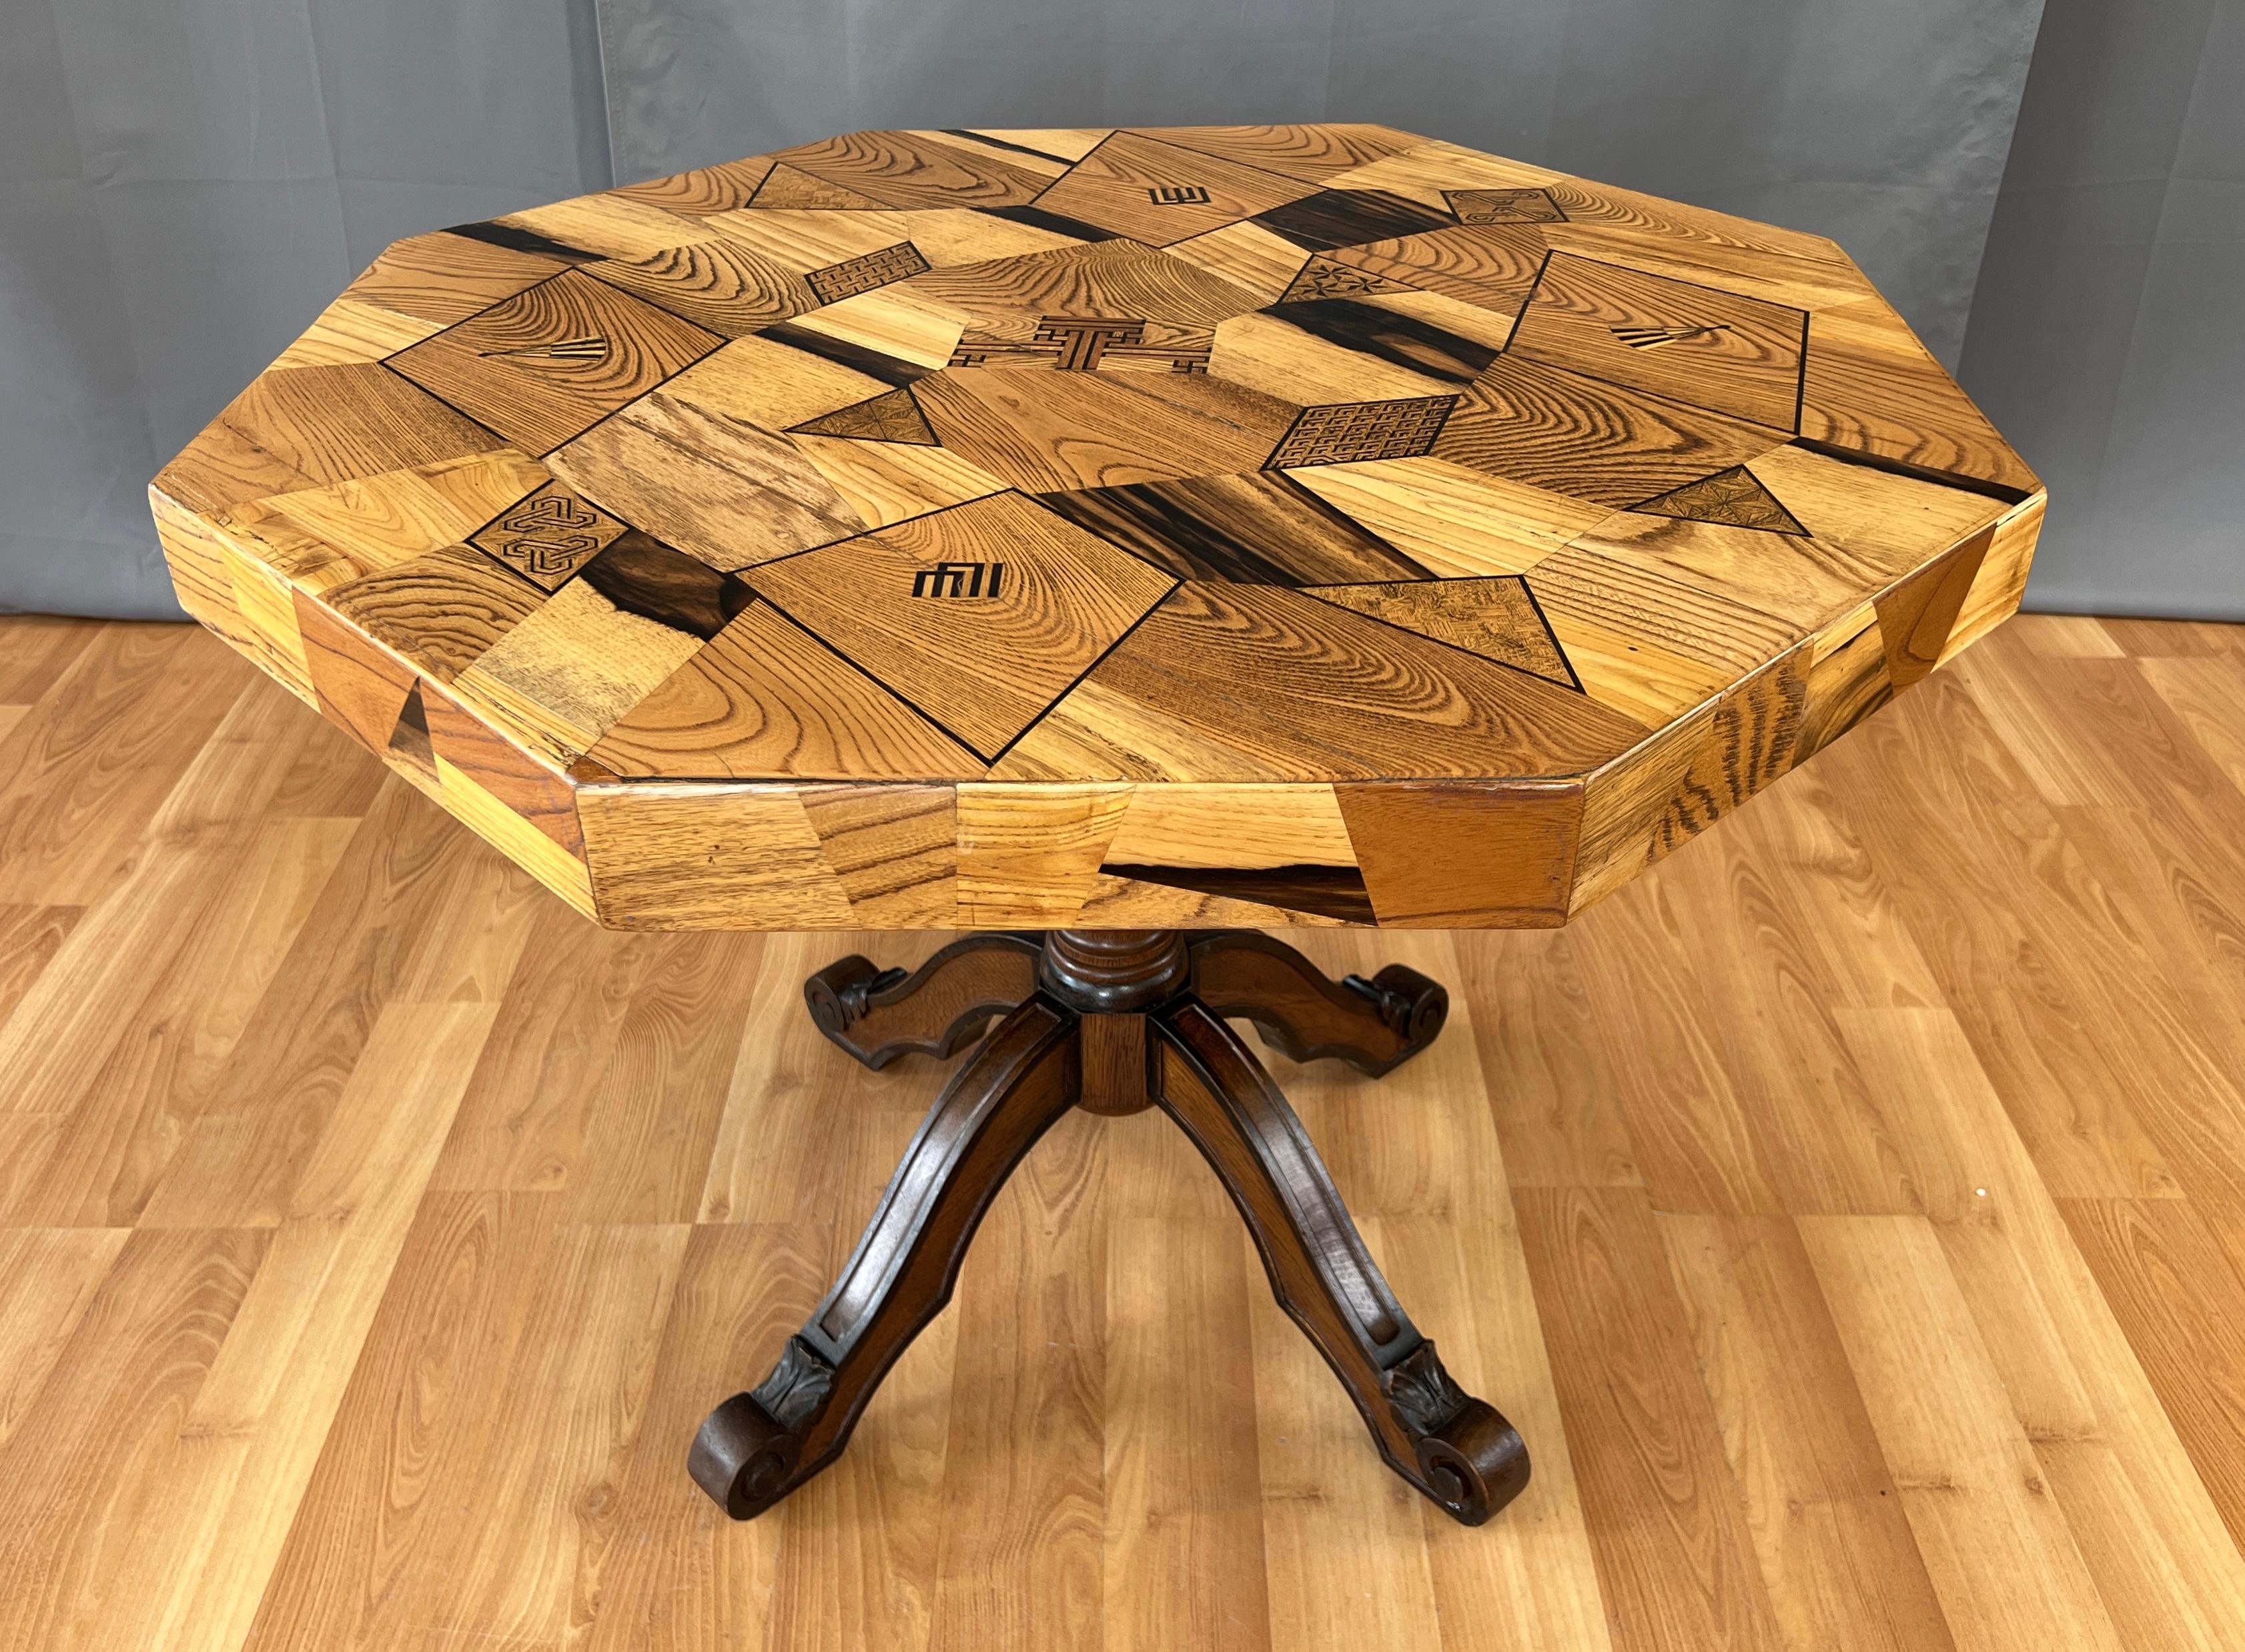 Nous proposons ici une table en marqueterie japonaise de la fin du 19e ou du début du 20e siècle, avec un plateau de forme hexagonale.
Une grande variété de bois a été utilisée, ainsi qu'un travail artisanal minutieux pour fabriquer cette table.